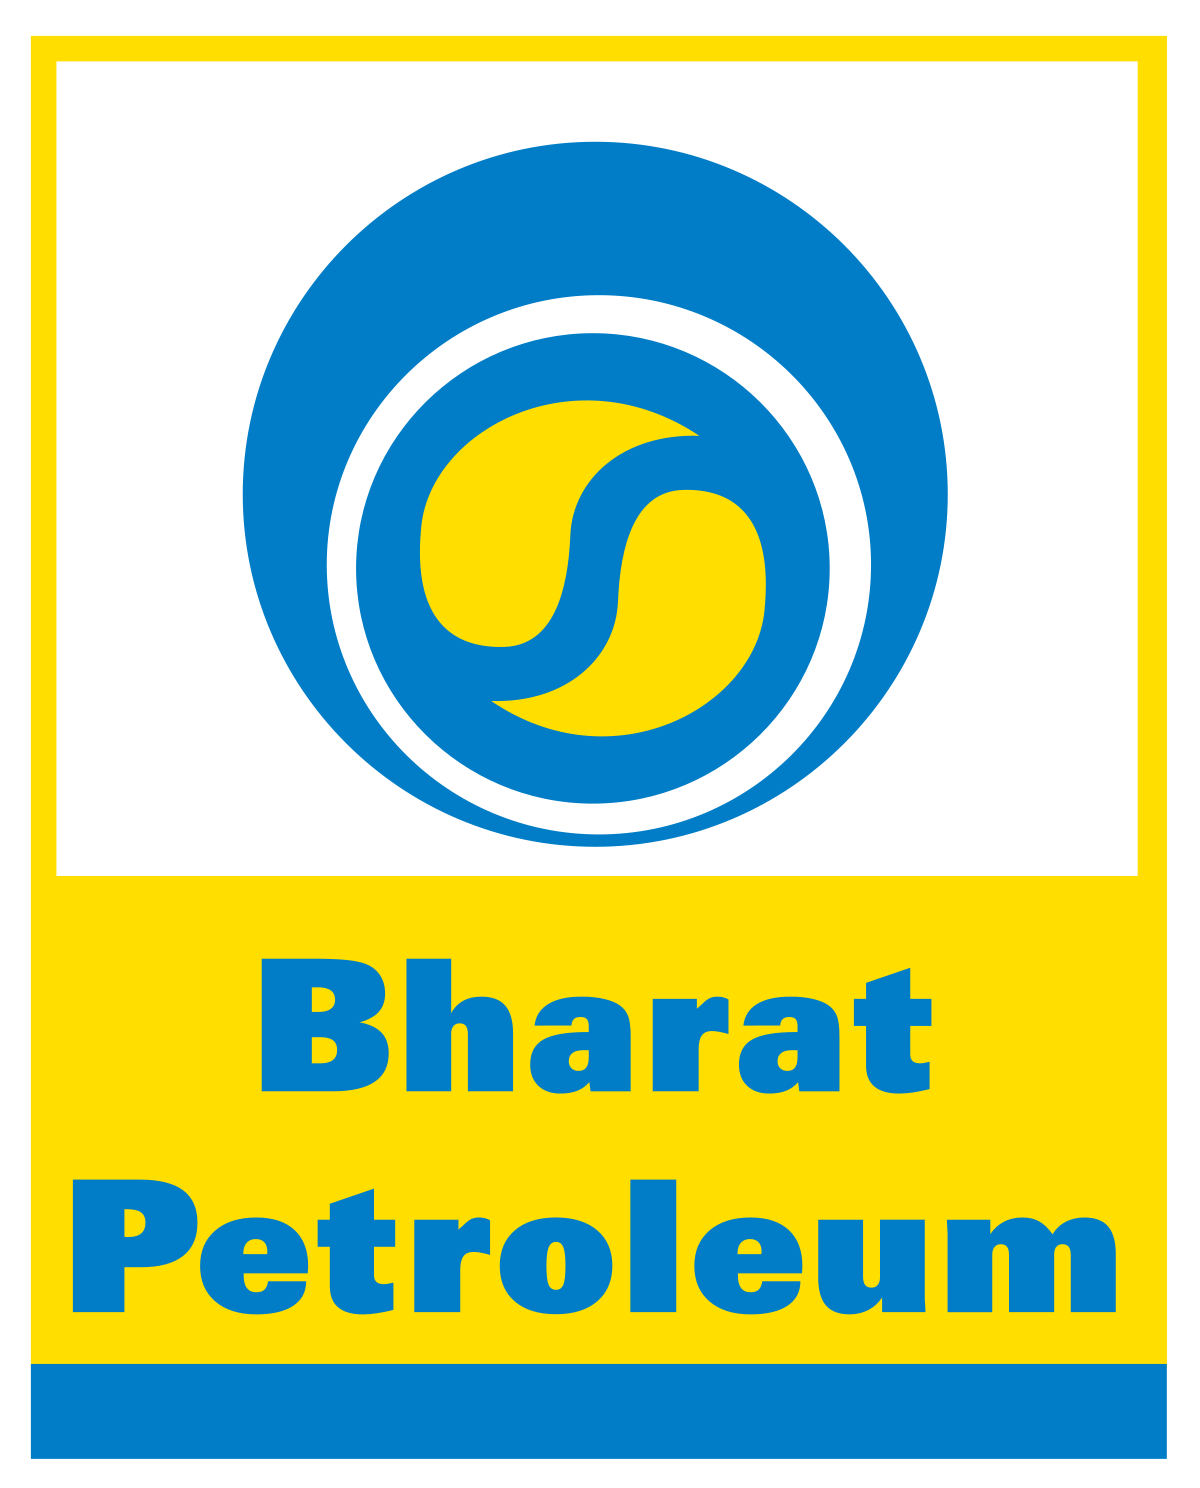 Bharat Petroleum - India